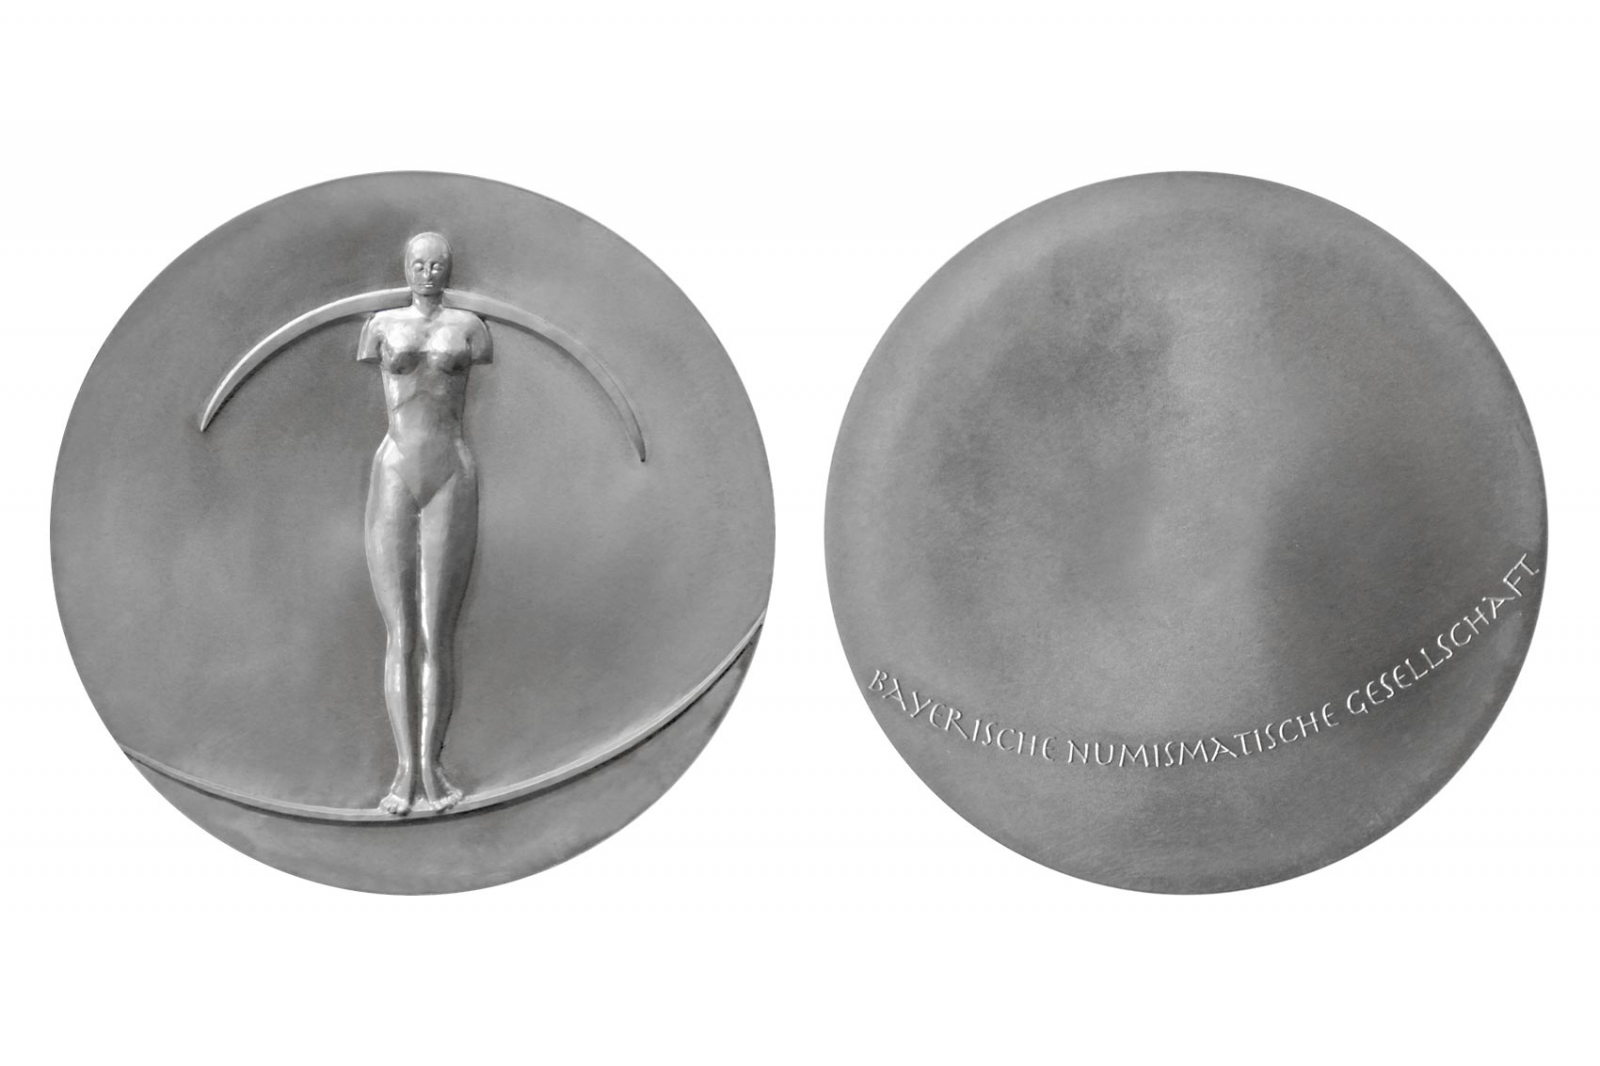 Medaille für die Bayerische Numismatische Gesellschaft e.V. – Ulla M. Scholl jun.